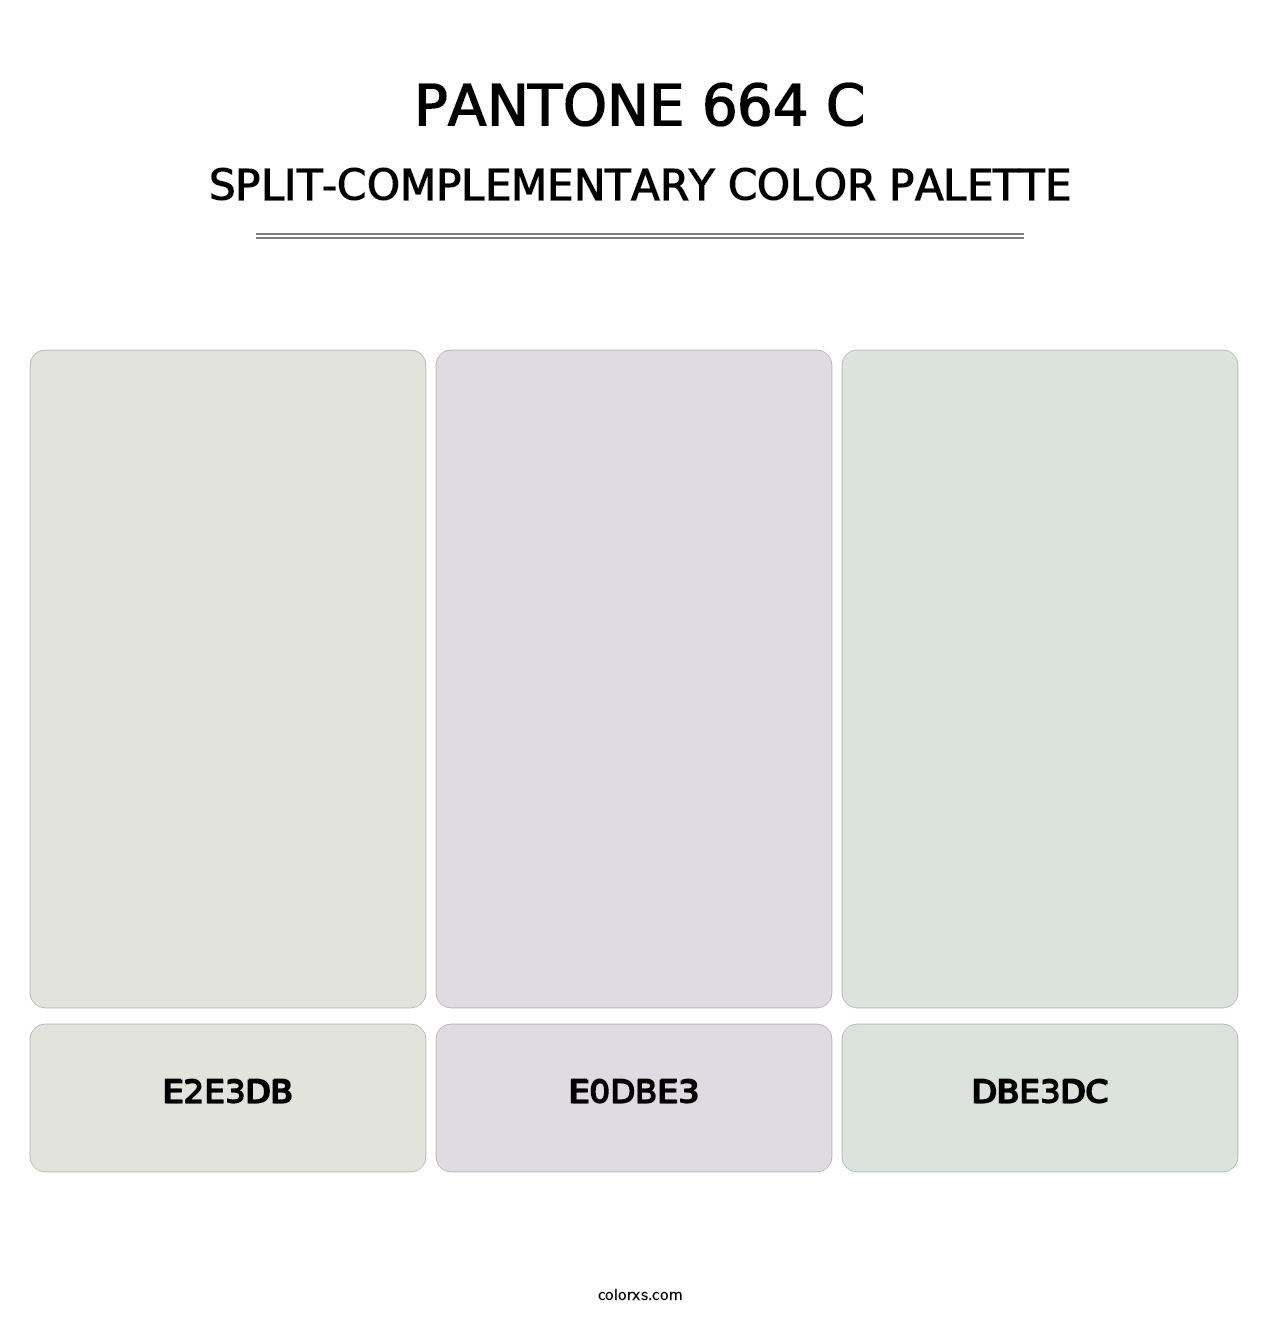 PANTONE 664 C - Split-Complementary Color Palette